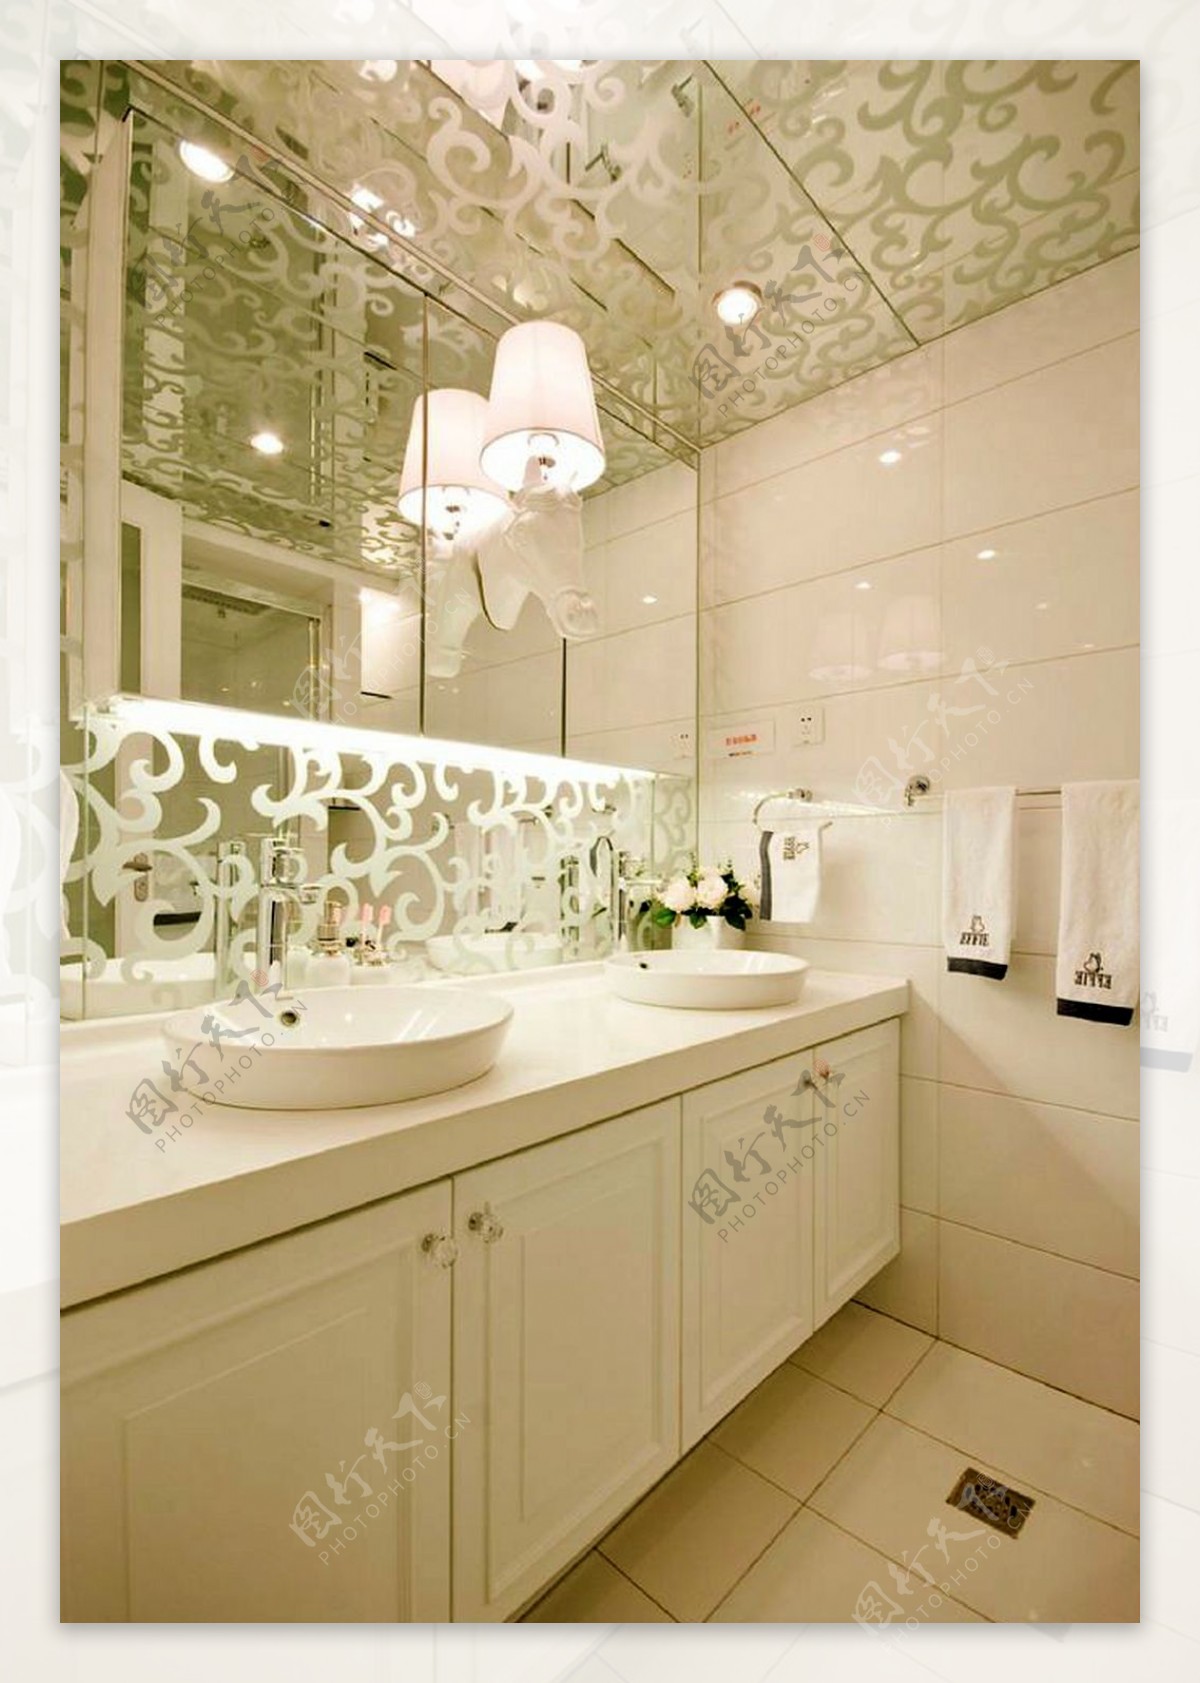 精致时尚风室内设计浴室壁灯效果图JPG源文件